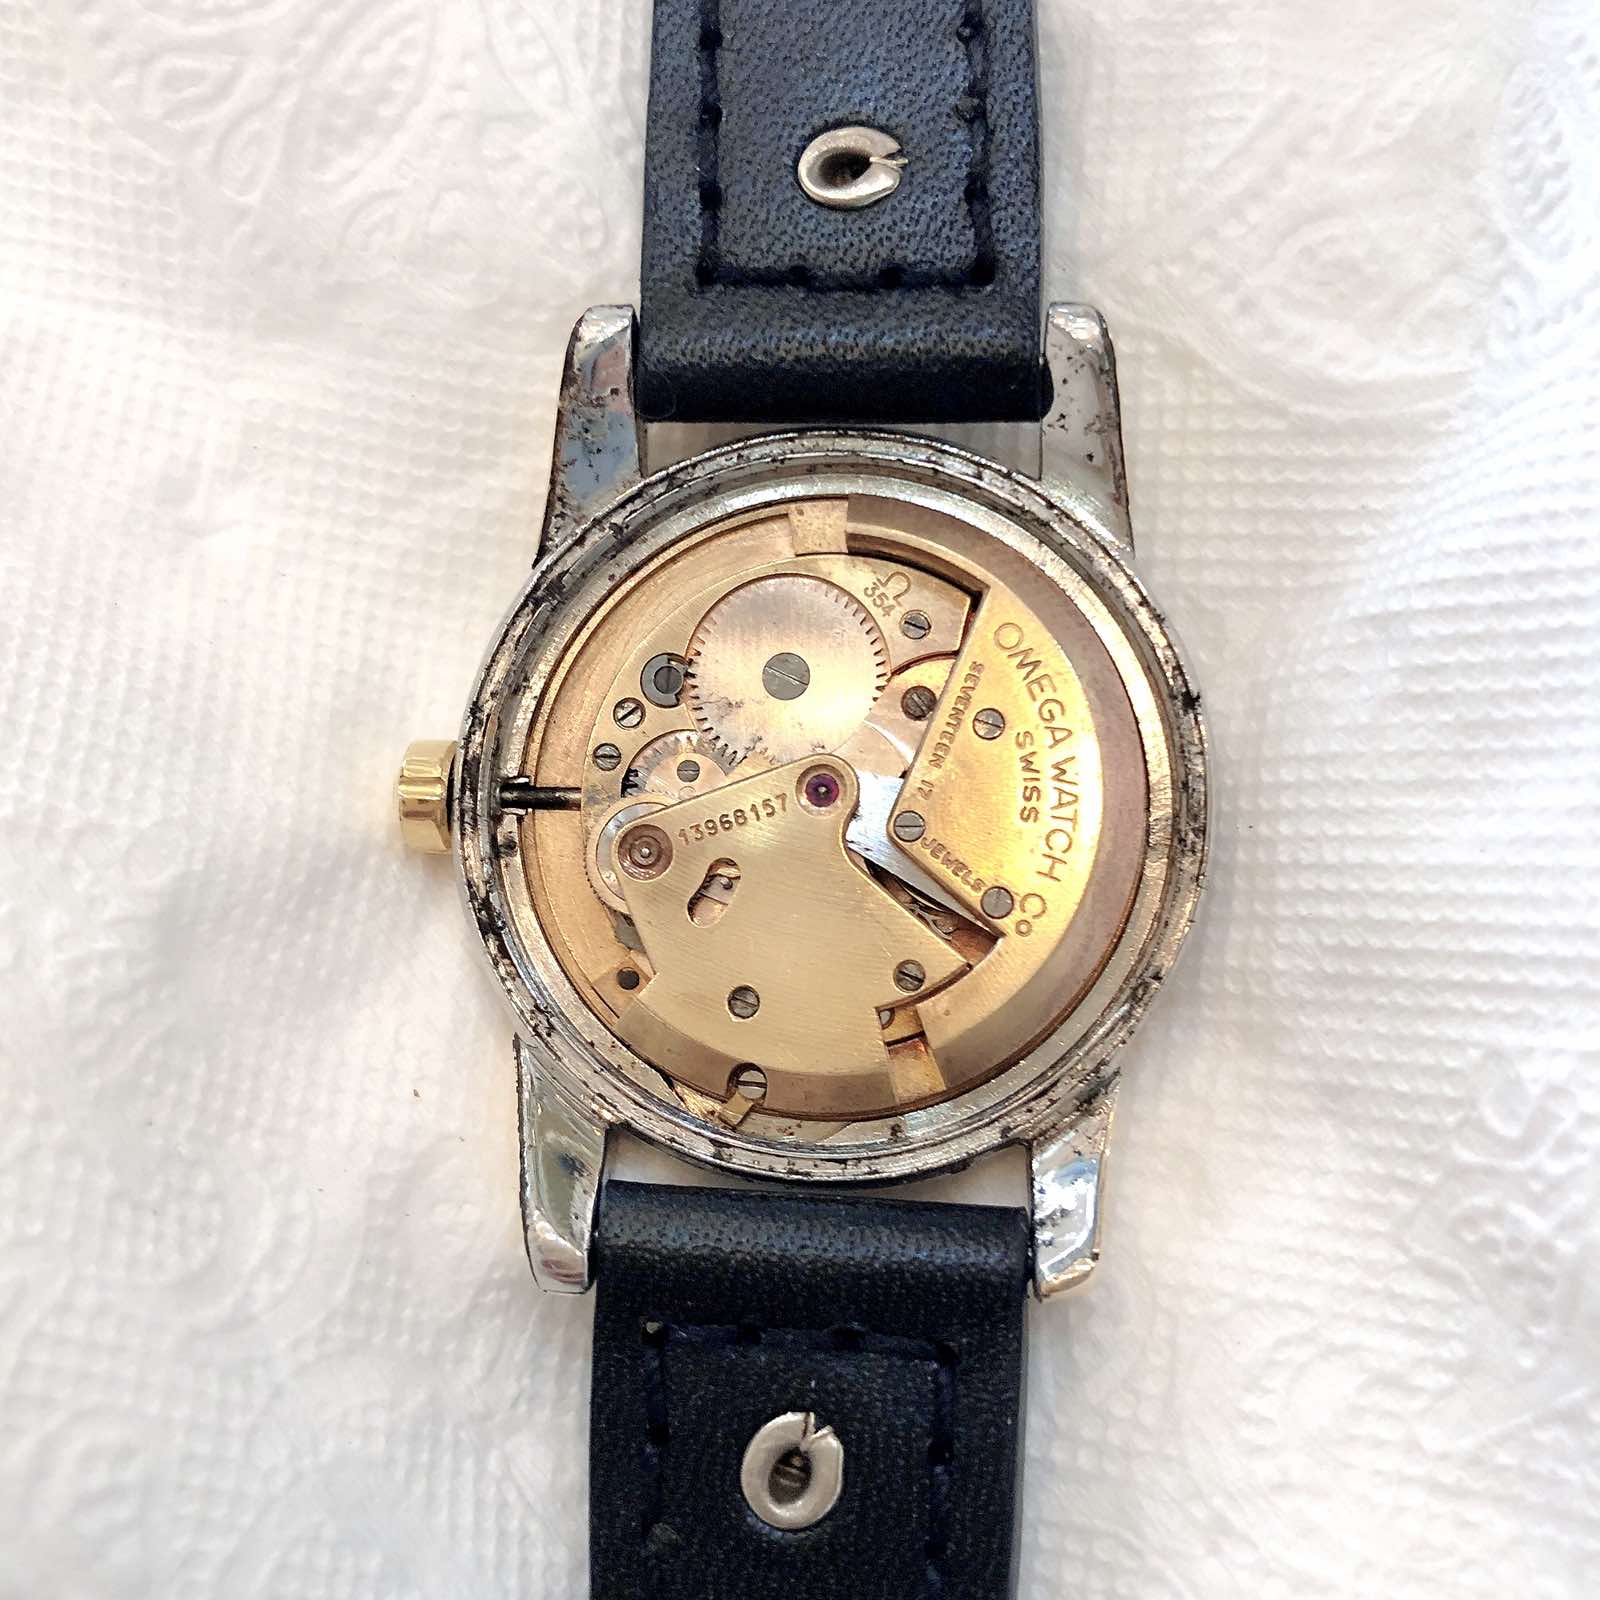 Đồng hồ cổ Omega seamaste automatic DMi chính hãng Thụy Sĩ